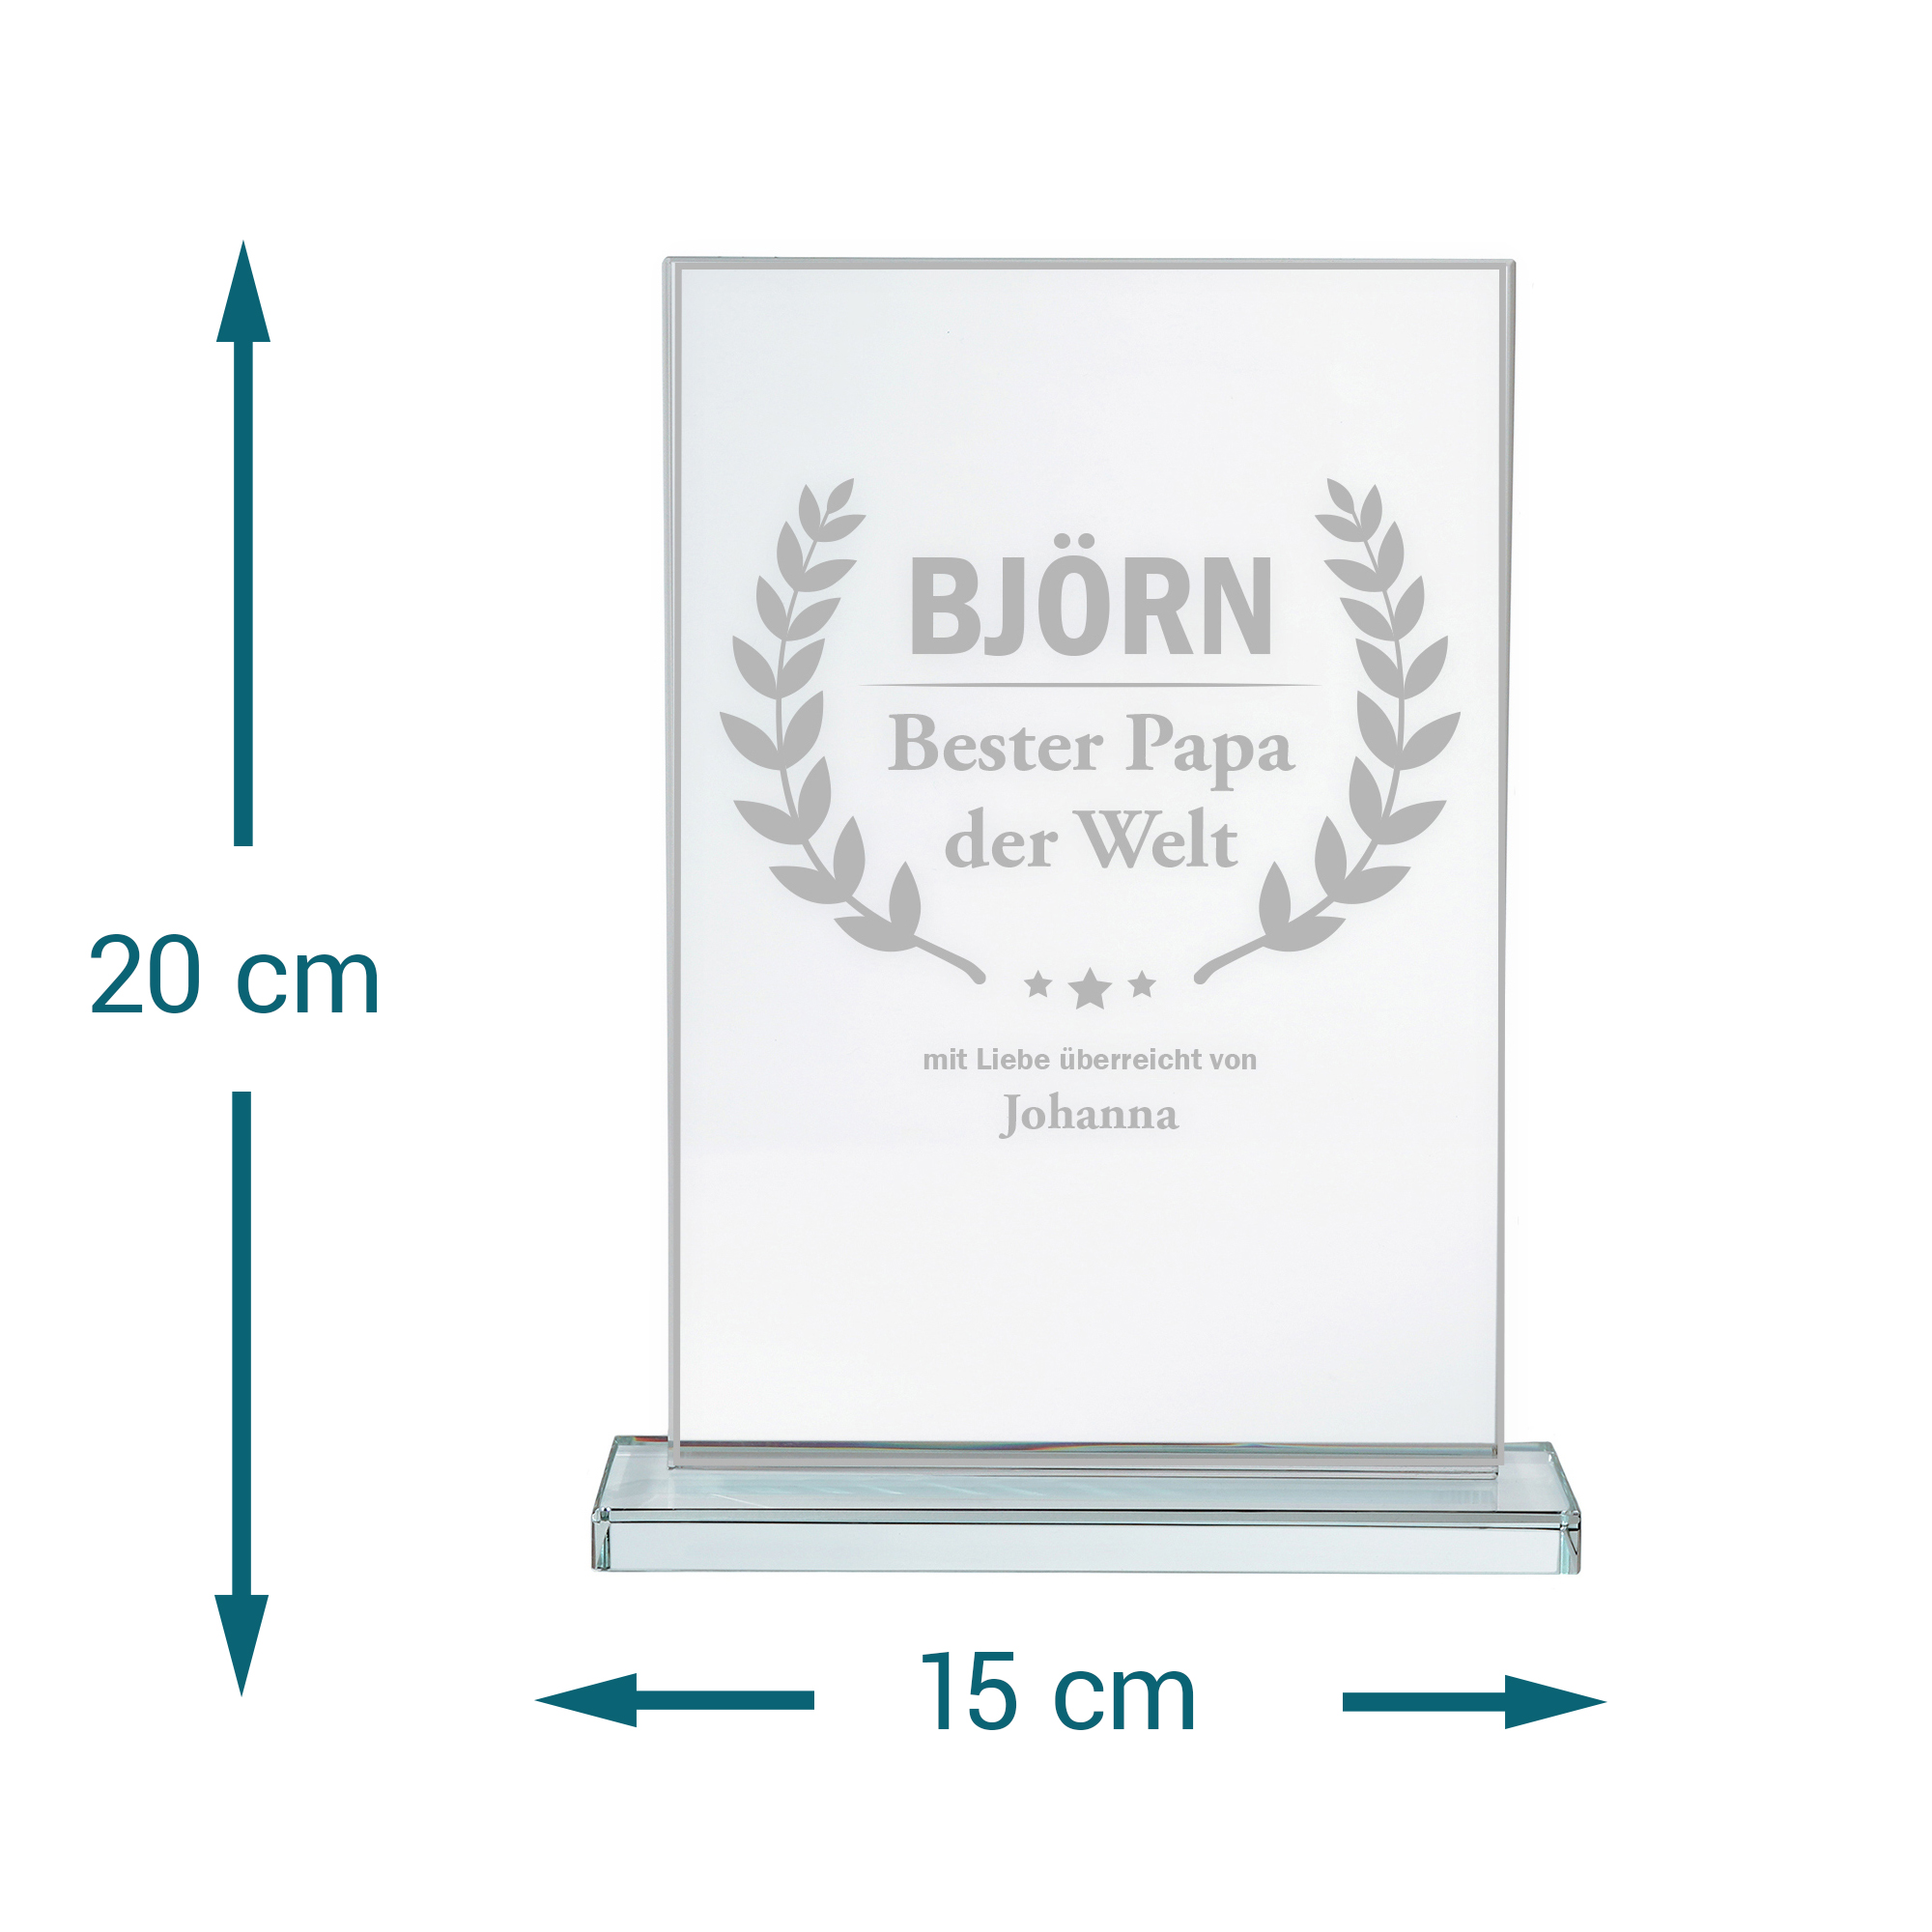 Personalisierter Glaspokal - Auszeichnung für Besten Papa 2162-22-MZ - 6